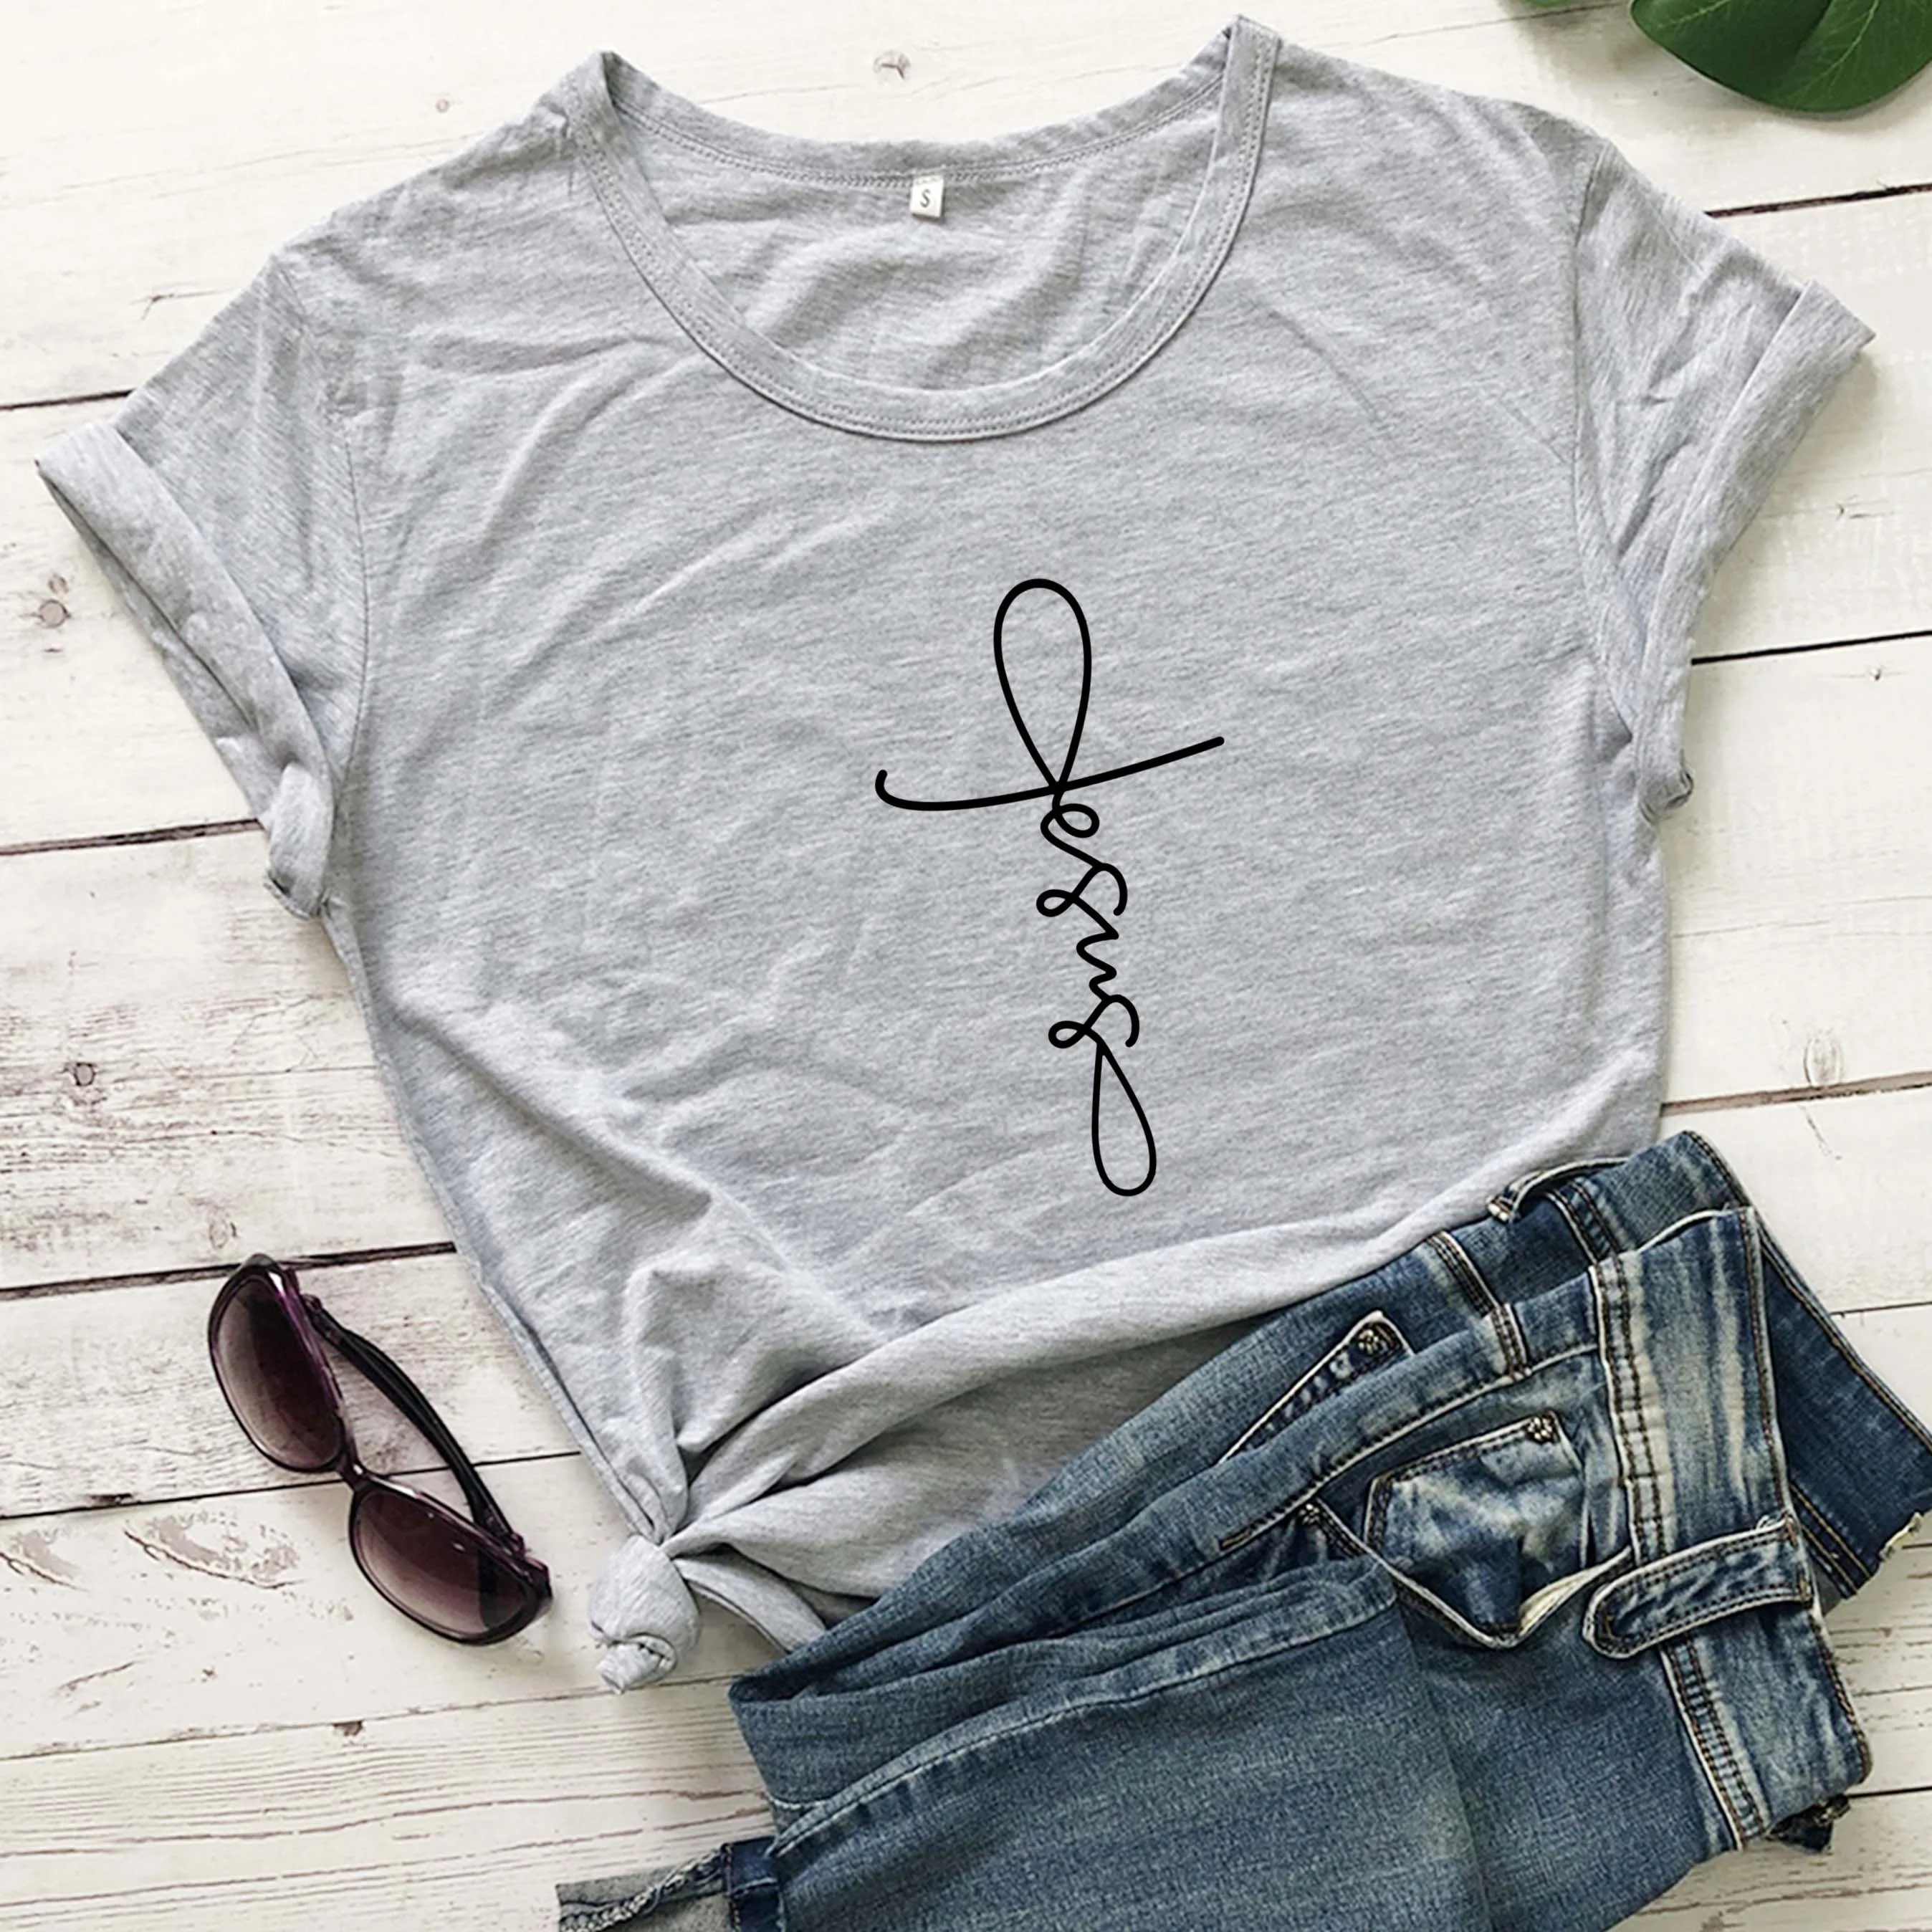 

Женская футболка с надписью Faith cross graphic, модная хипстерская футболка из чистого хлопка с изображением Христианской Библии для крещения, пов...